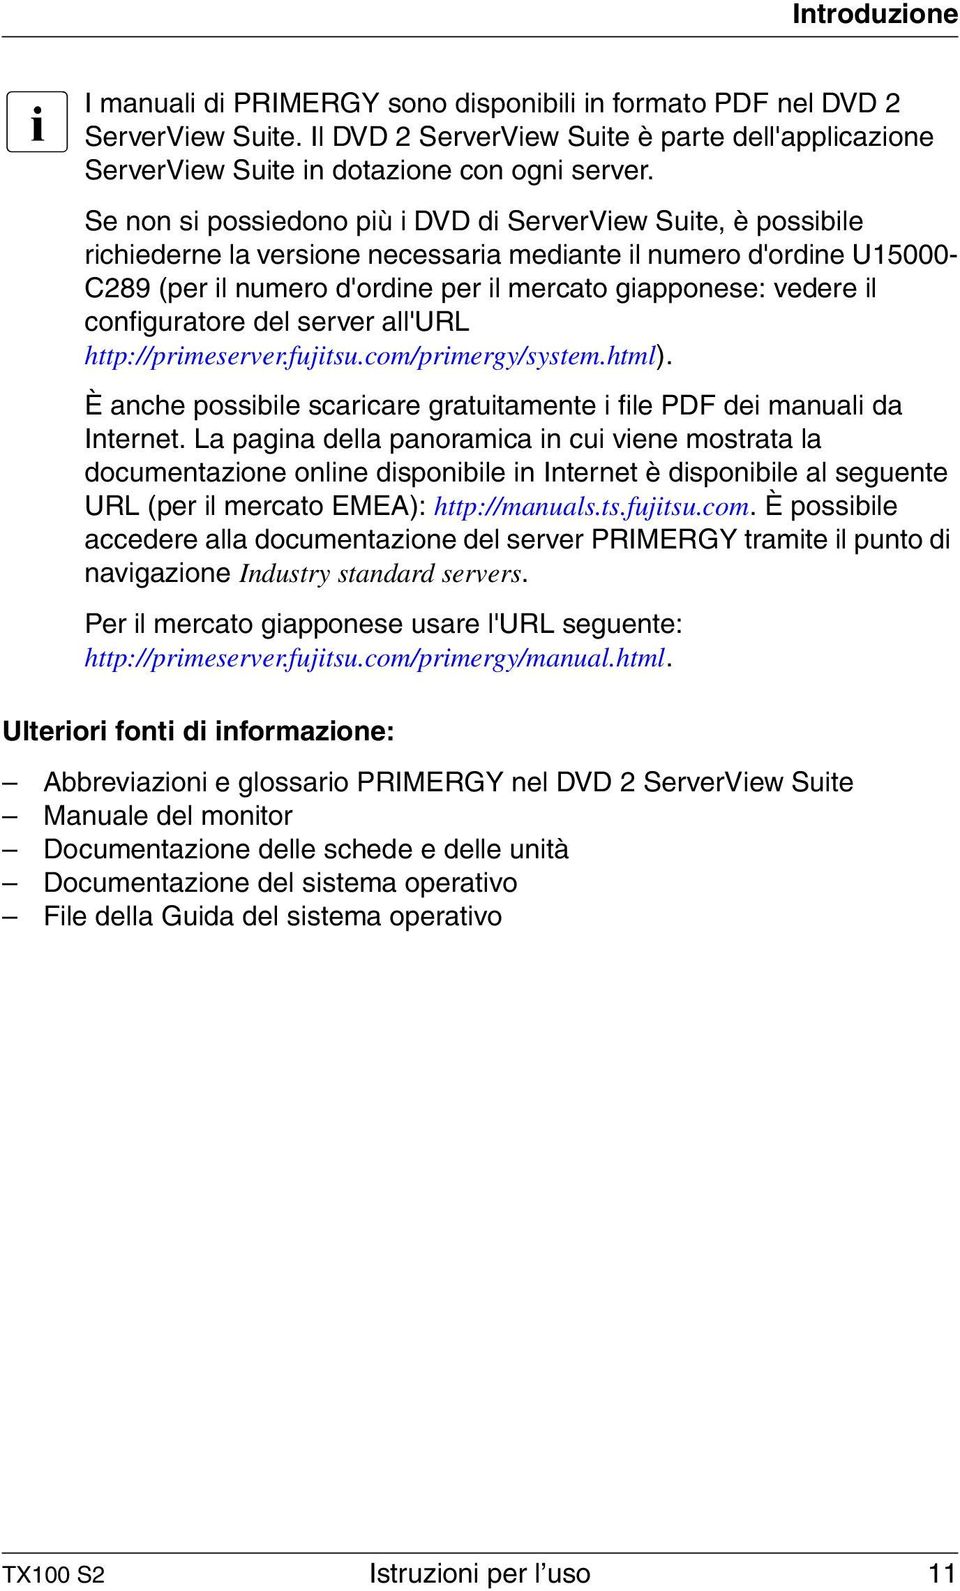 il configuratore del server all'url http://primeserver.fujitsu.com/primergy/system.html). È anche possibile scaricare gratuitamente i file PDF dei manuali da Internet.